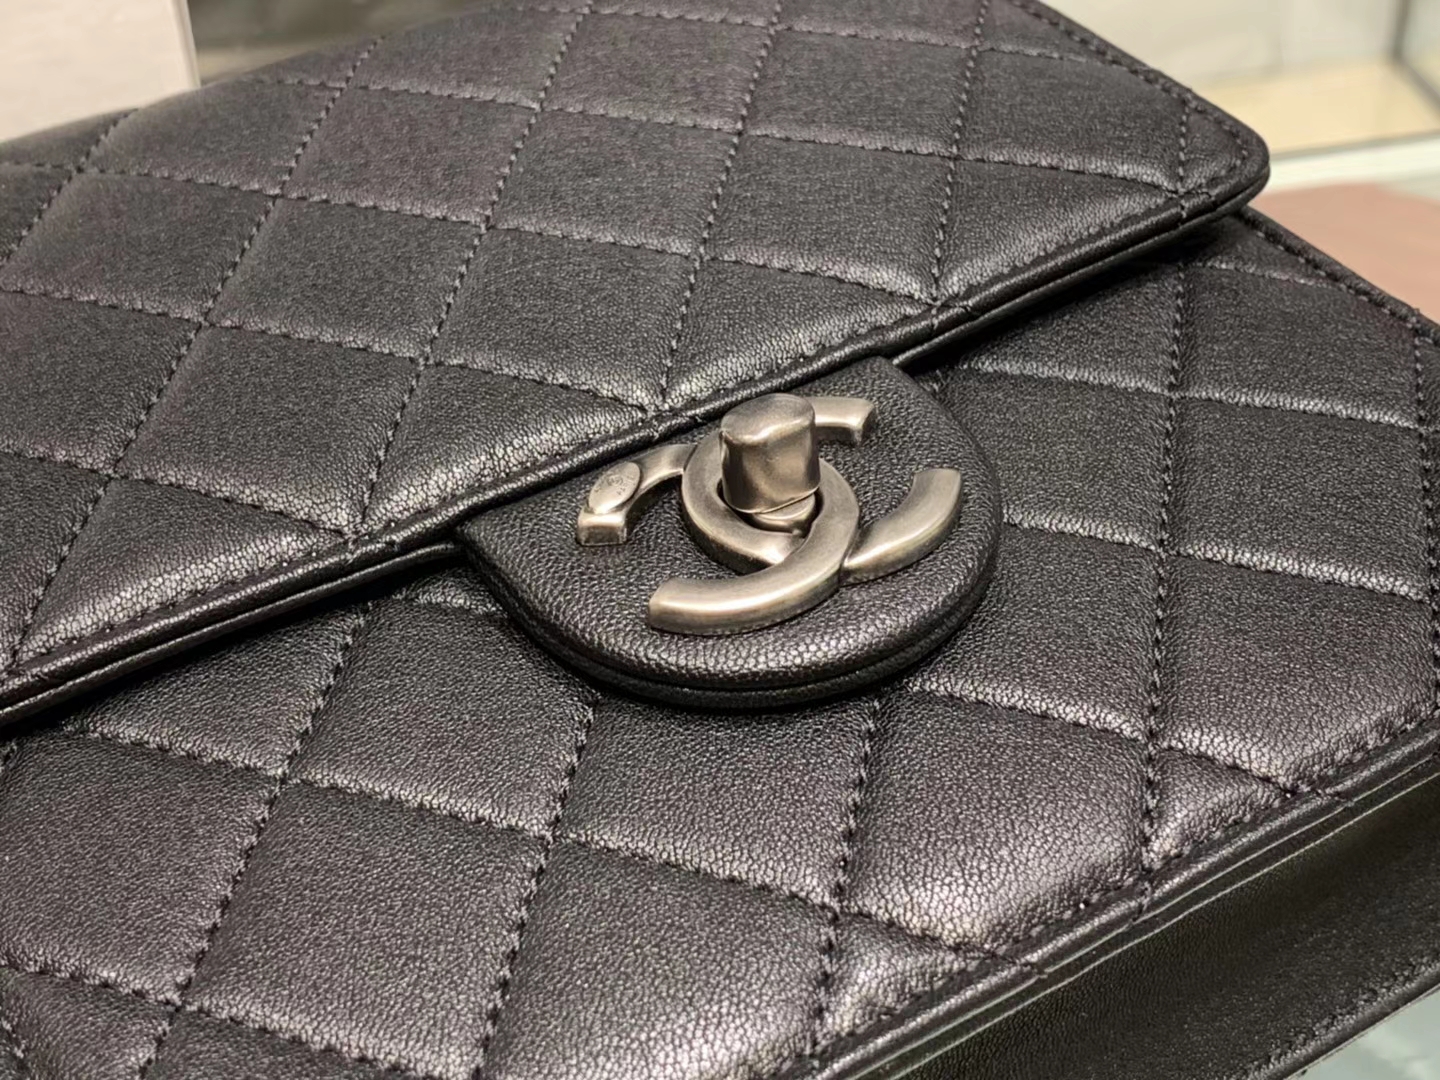 Chanel（香奈儿）???? 春夏升级版 透明珍珠包 黑色 银扣